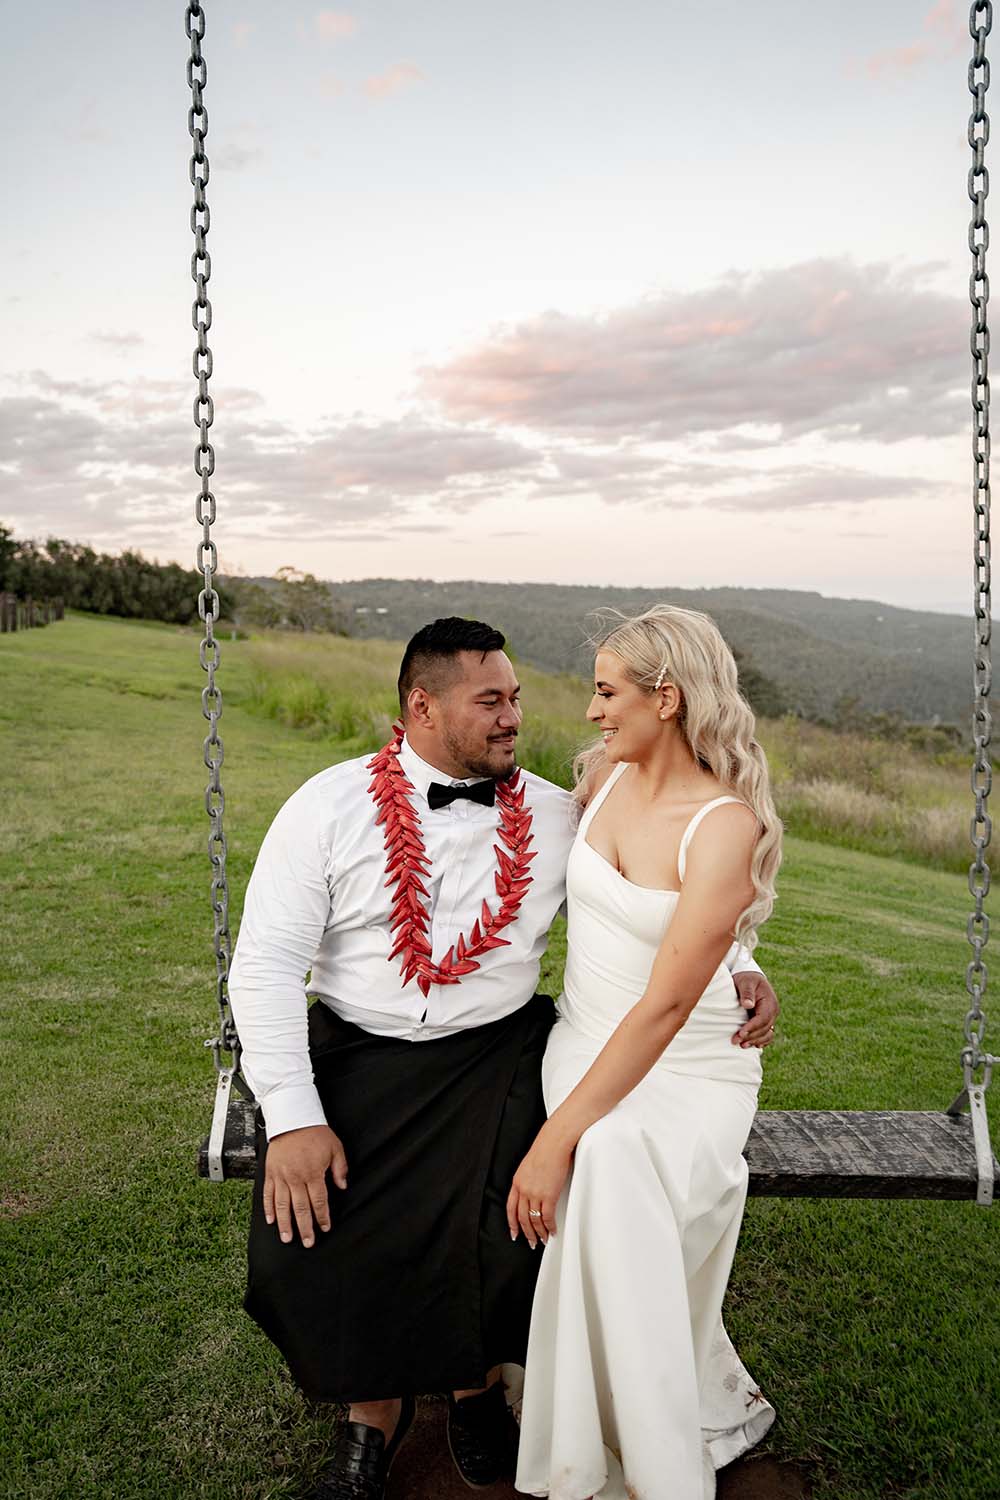 Wedding Photography - Bride & Groom on swing